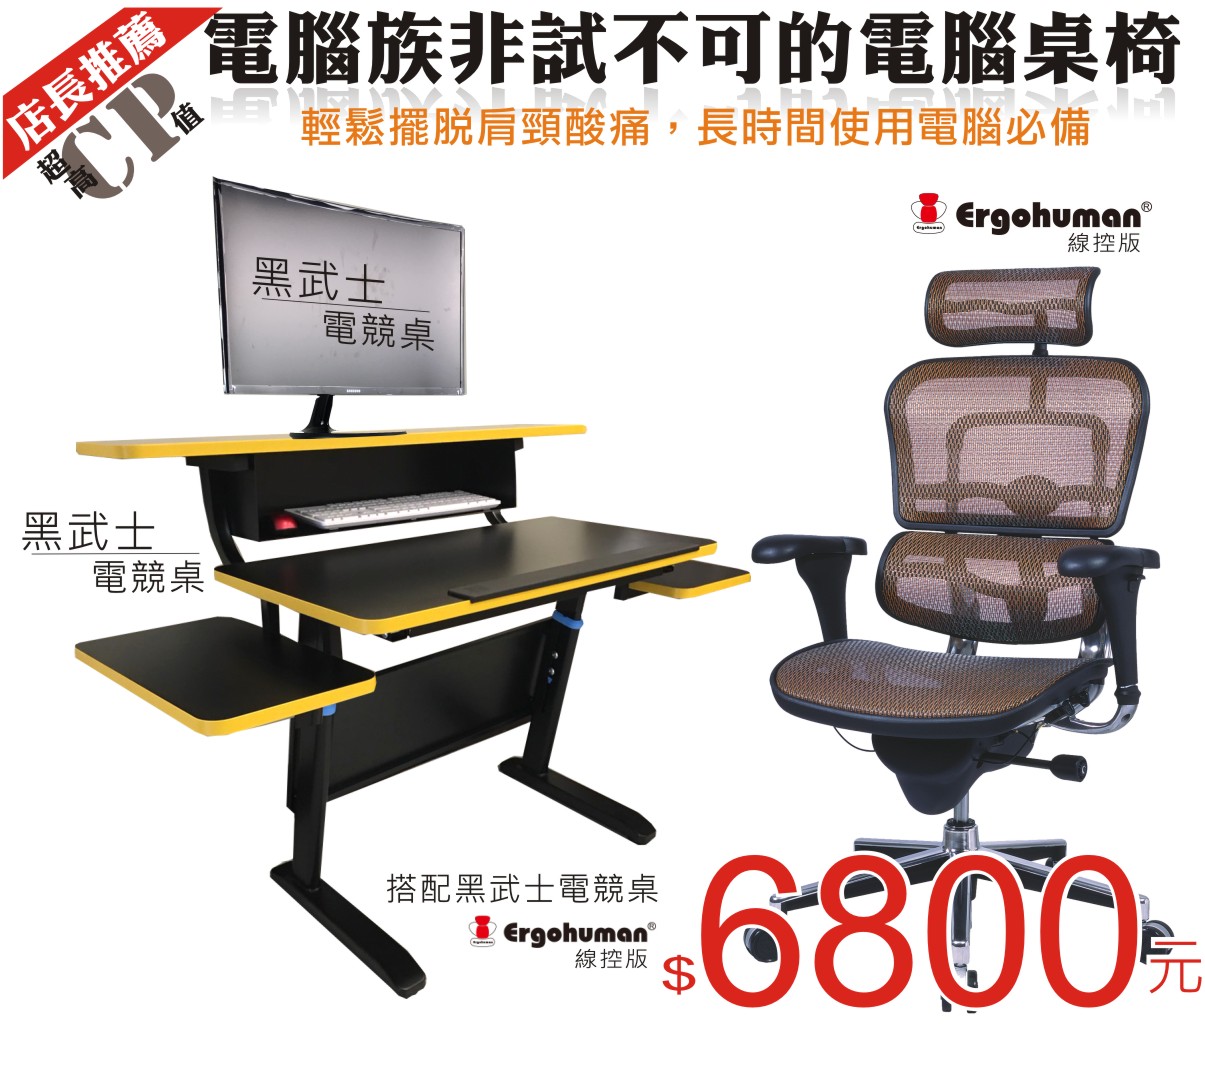 Ergohuman111人體工學椅|電腦網椅-電腦族非是不可桌椅組合(黑武士電競桌+Ergohuman111人體工學椅)